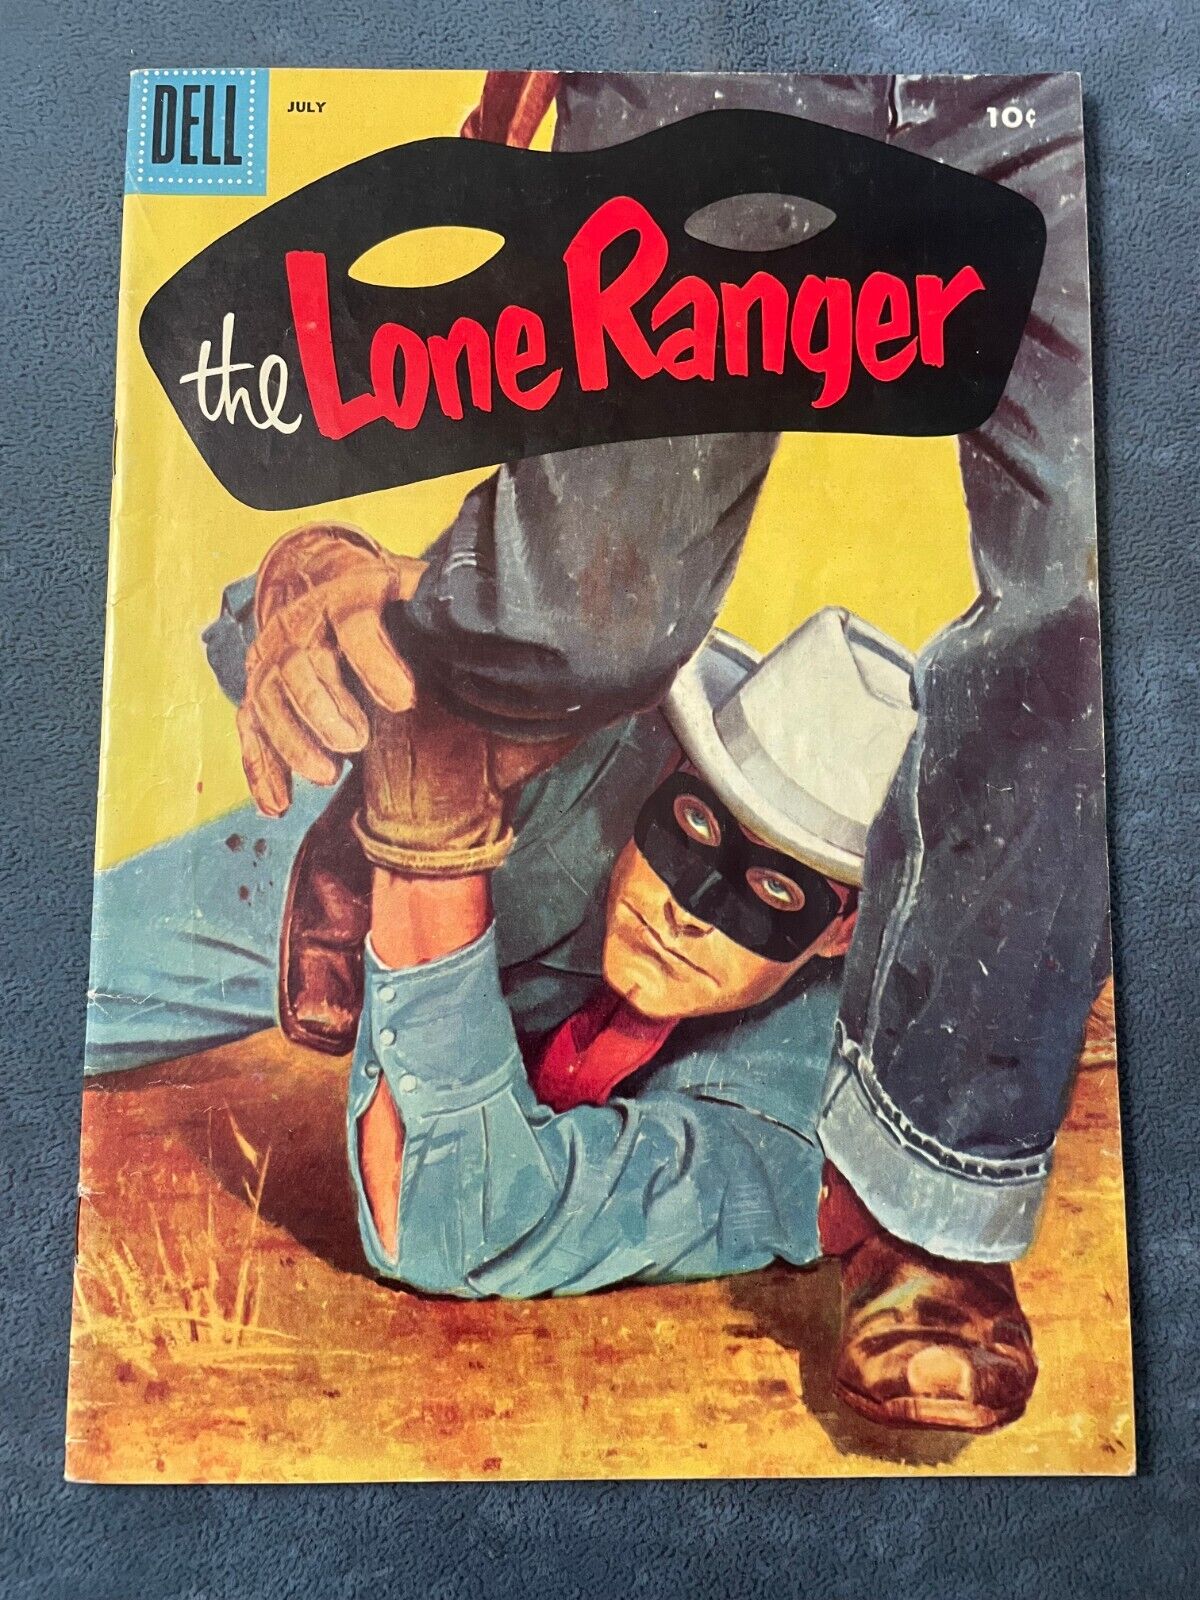 The Lone Ranger #97 1956 Dell Comic Book Golden Age Spaulding High Grade VF